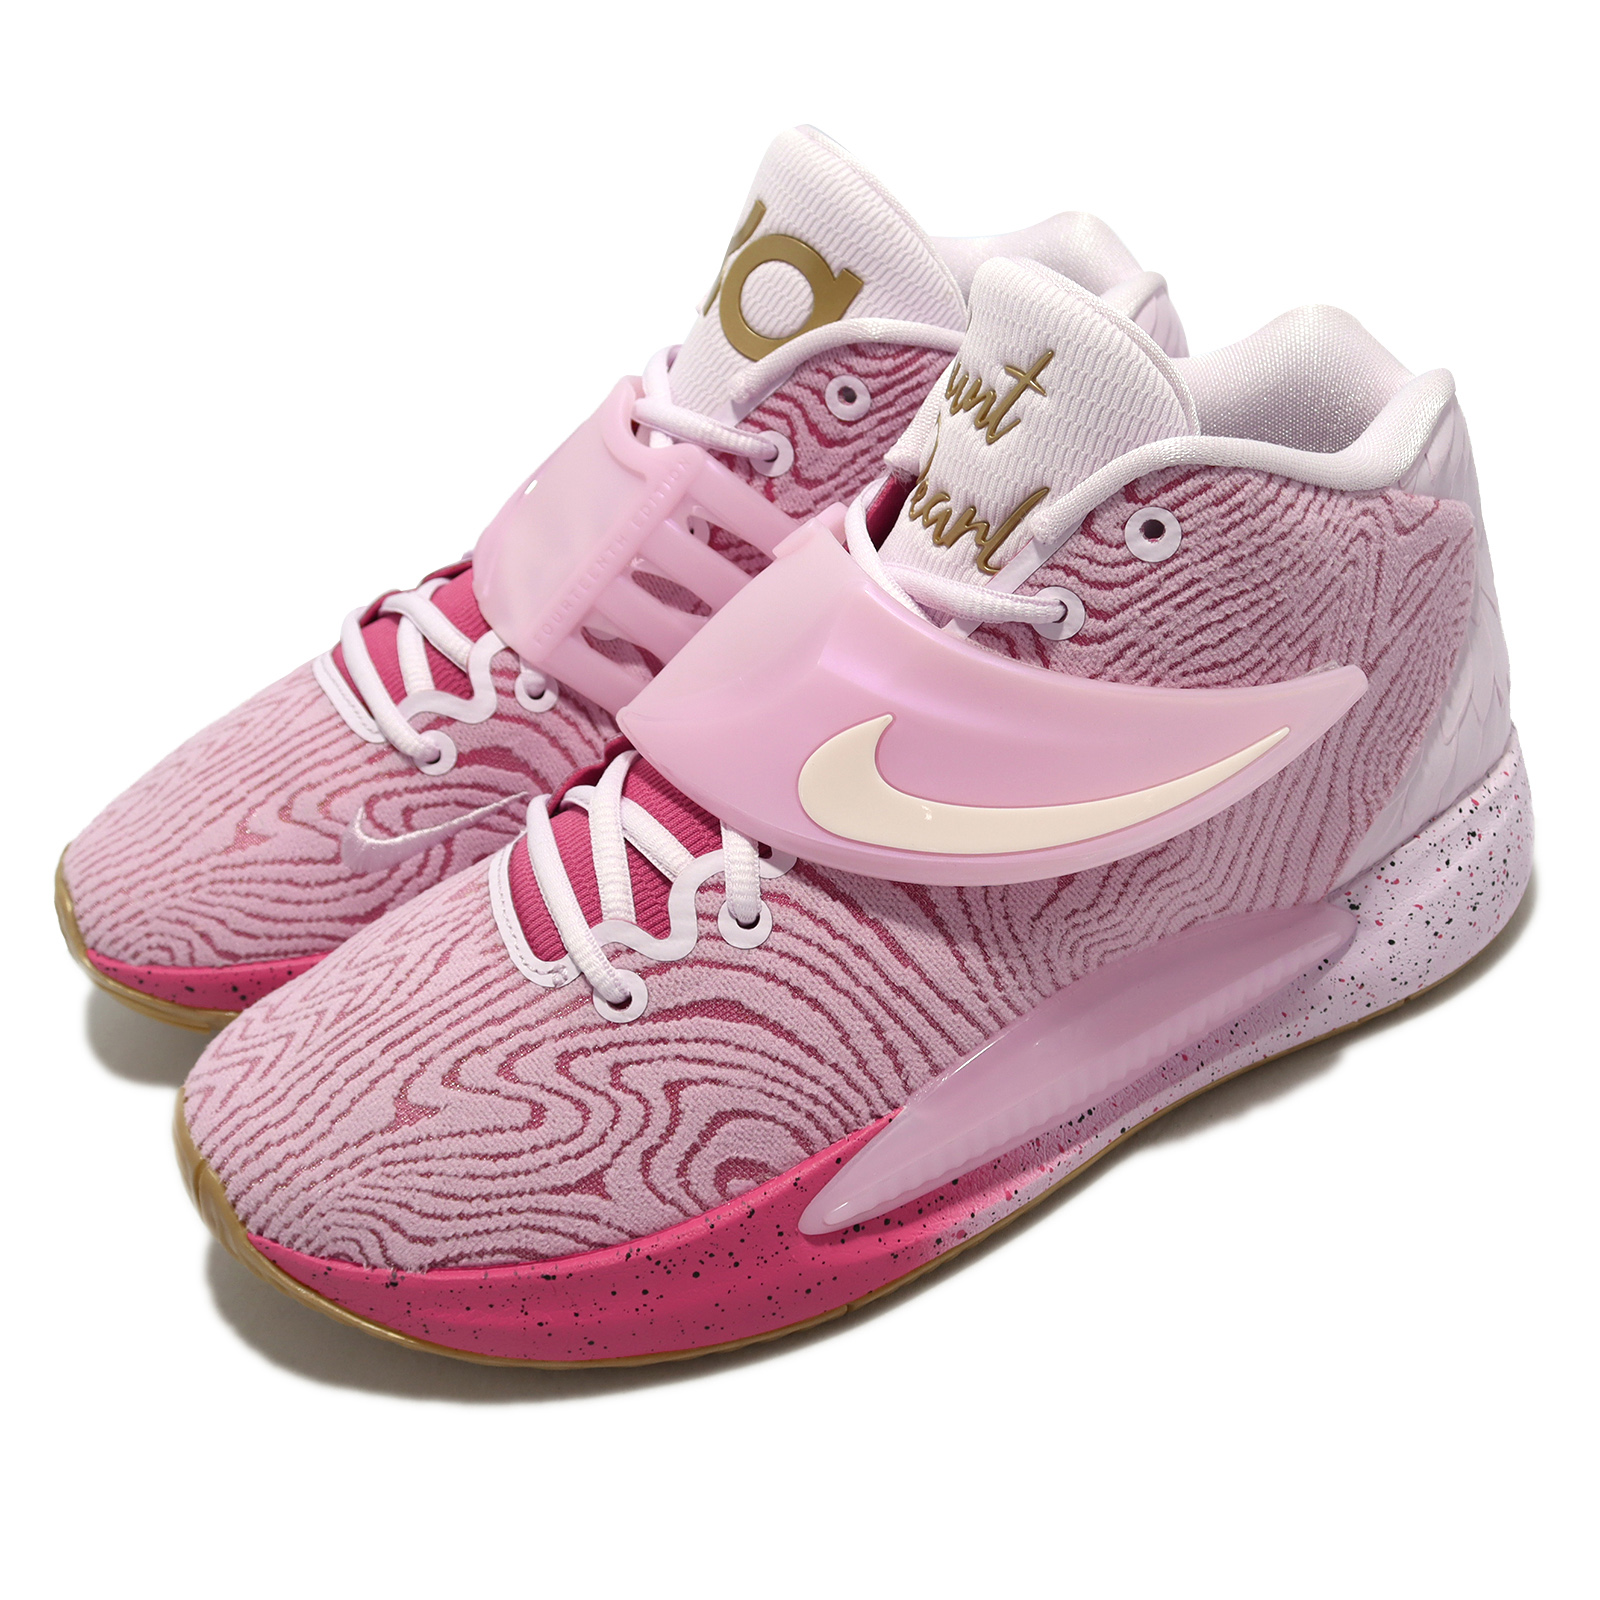 Nike 籃球鞋 KD14 Seasonal EP 粉紅 金 男鞋 乳癌 珍珠阿姨 14代 氣墊 Durant DC9380-600 DC9380-600